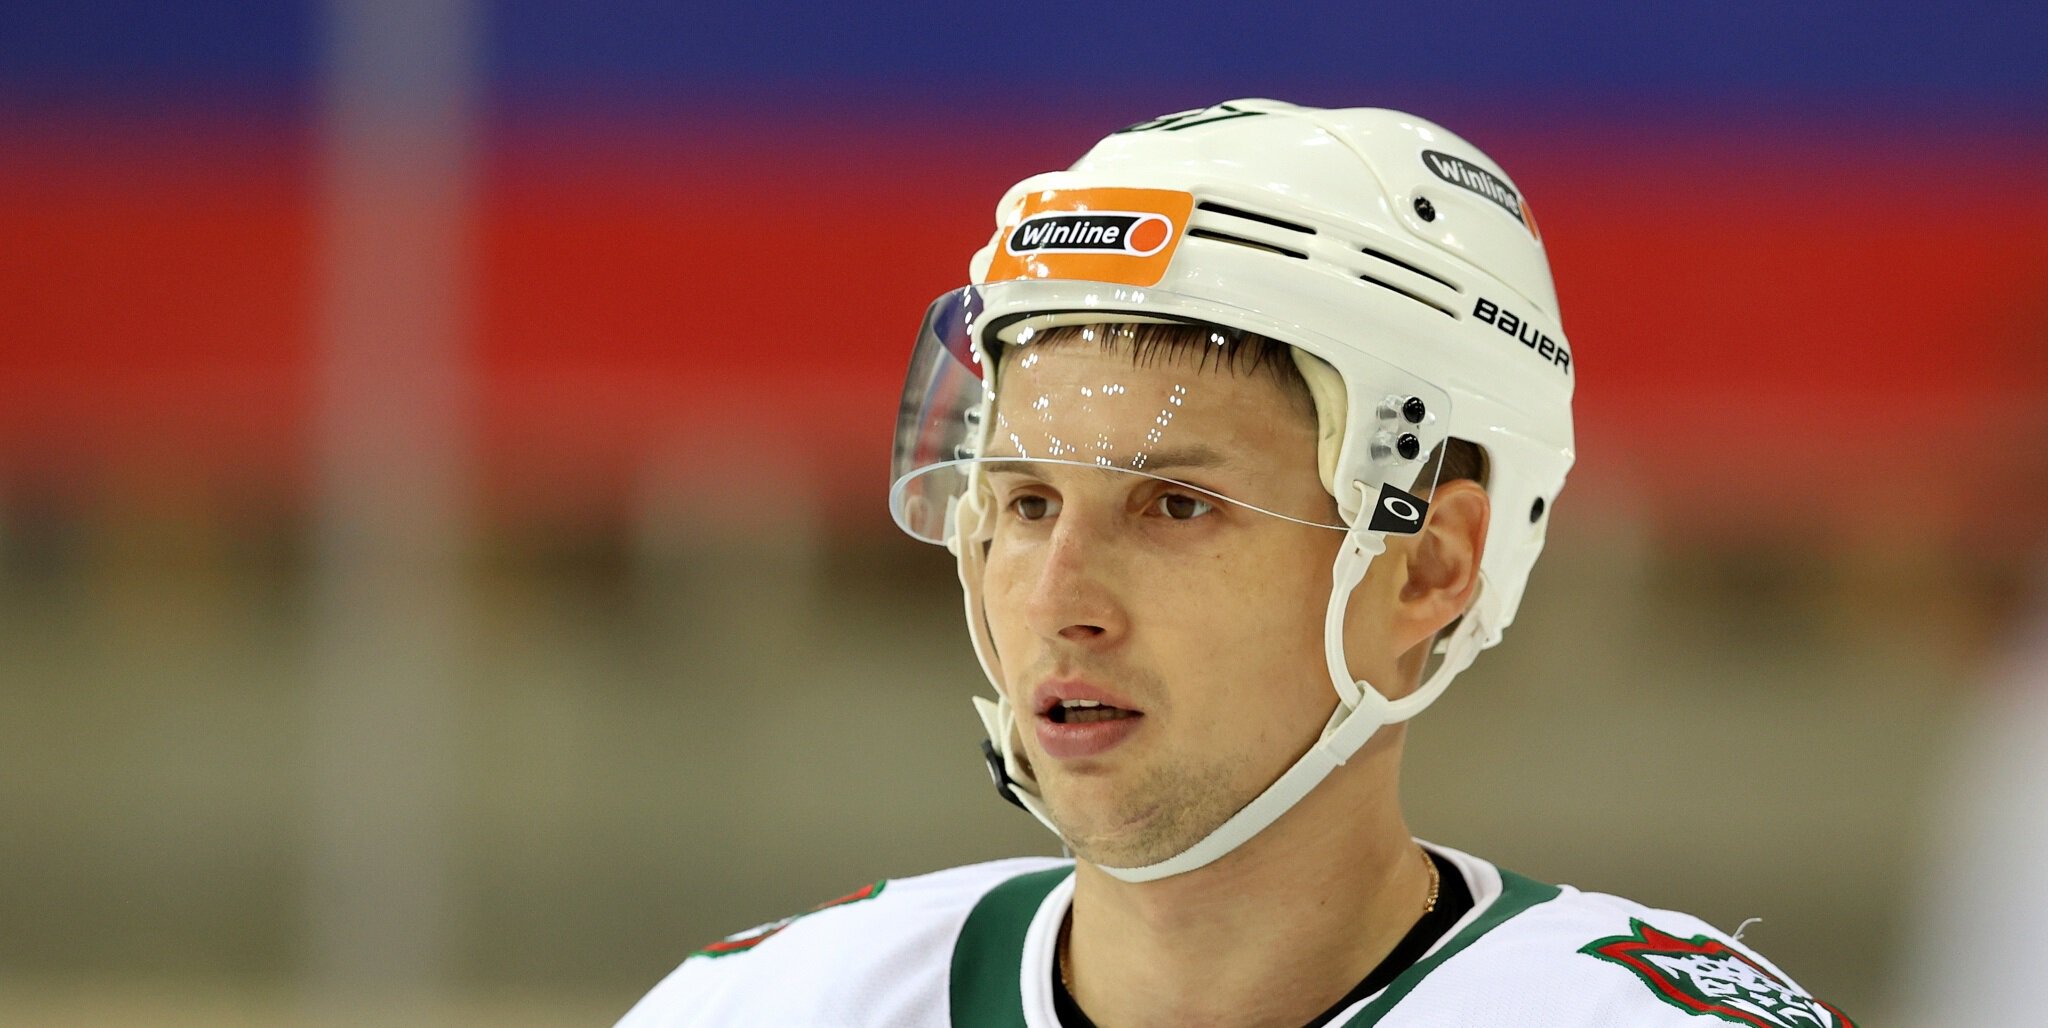 Шипачев стал 2-м игроком в истории с 900 матчами в КХЛ с учетом плей-офф